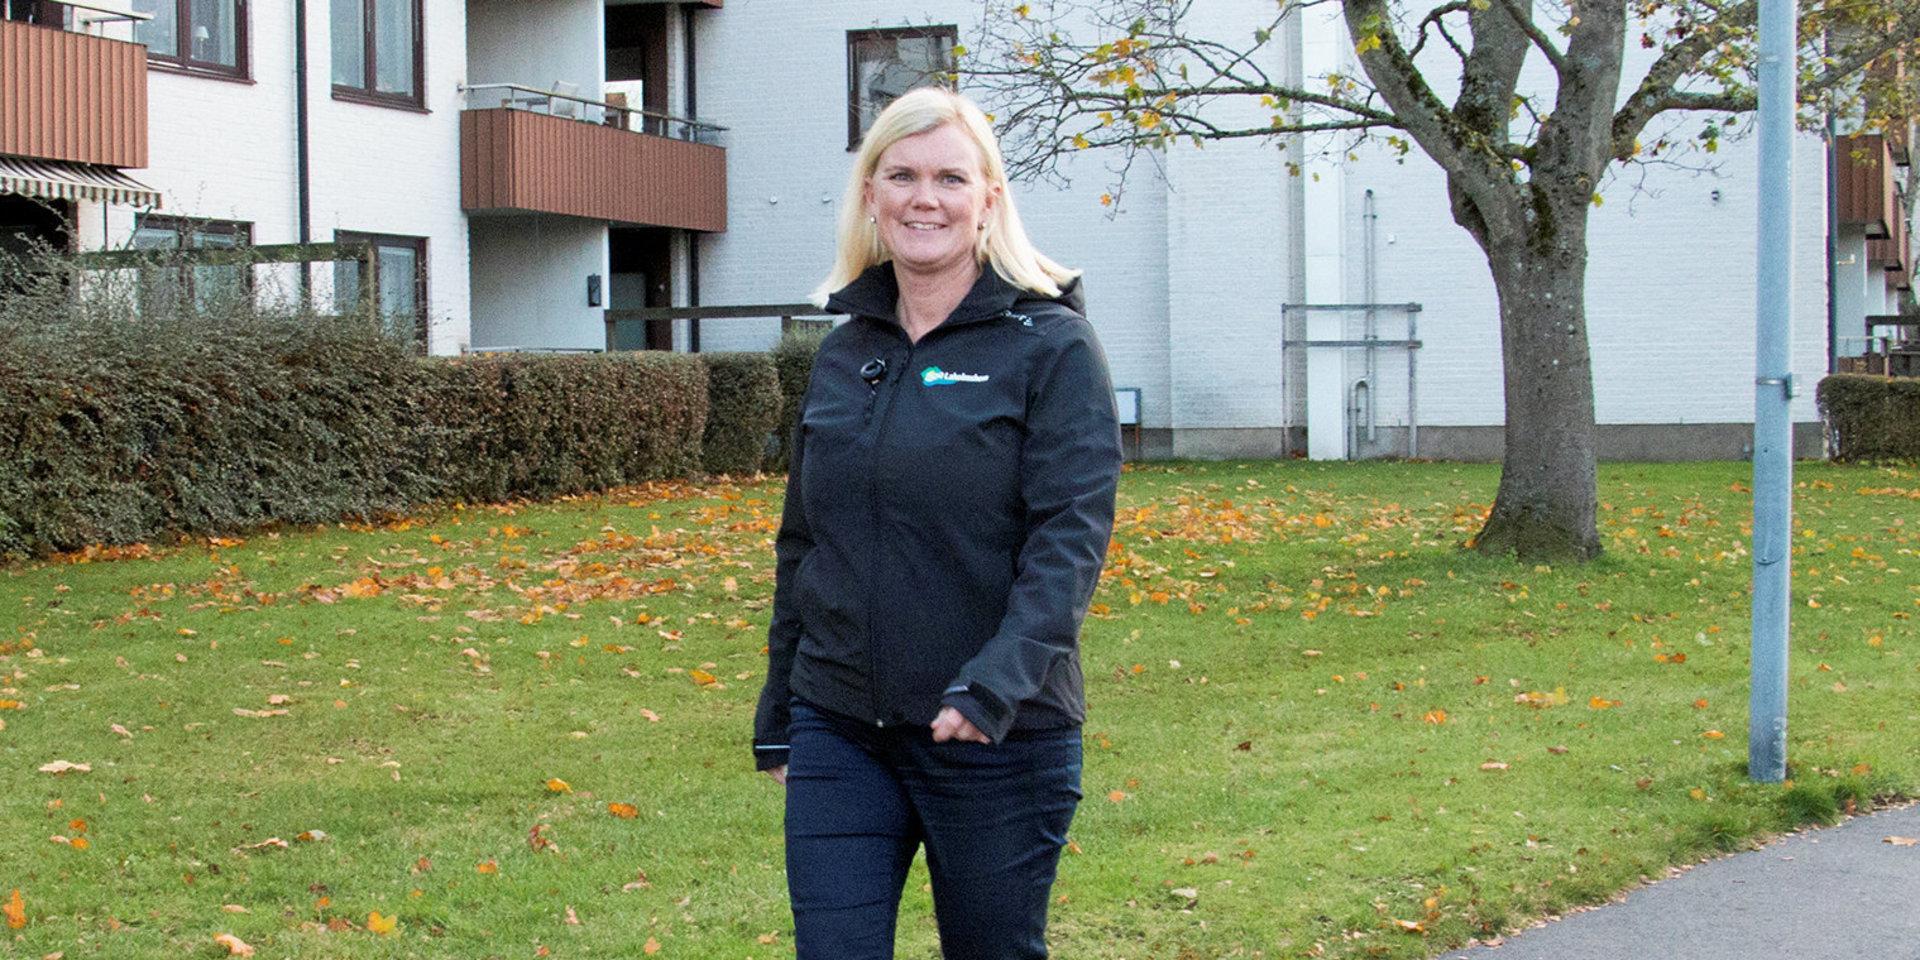 Sofie Gustafsson är projektledare på Laholmshem för husbygget i Våxtorp. Hon tycker inte att en mindre avvikelse på höjden påverkar någon närboende negativt. ”Ingen utblick av högt värde går om intet, dvs sjöutsikt eller något liknande” skrev hon i ett mejl till kommunen.